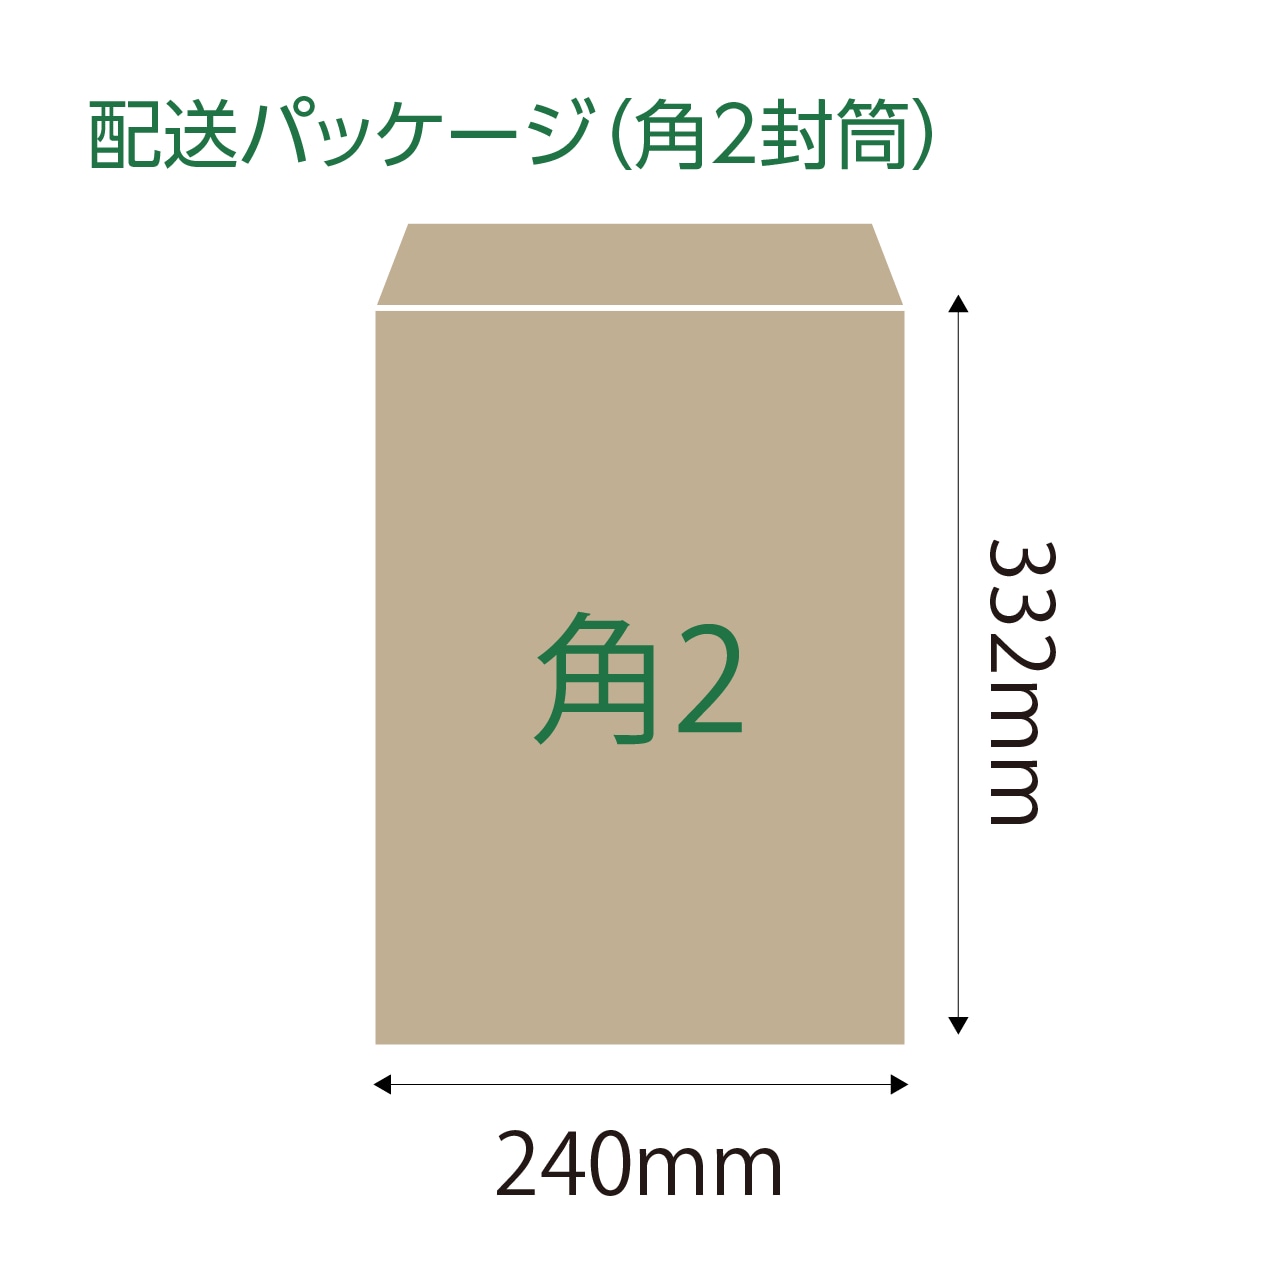 OSAWA CRAFT GREEN TEA（12包入り×1袋）送料込み！